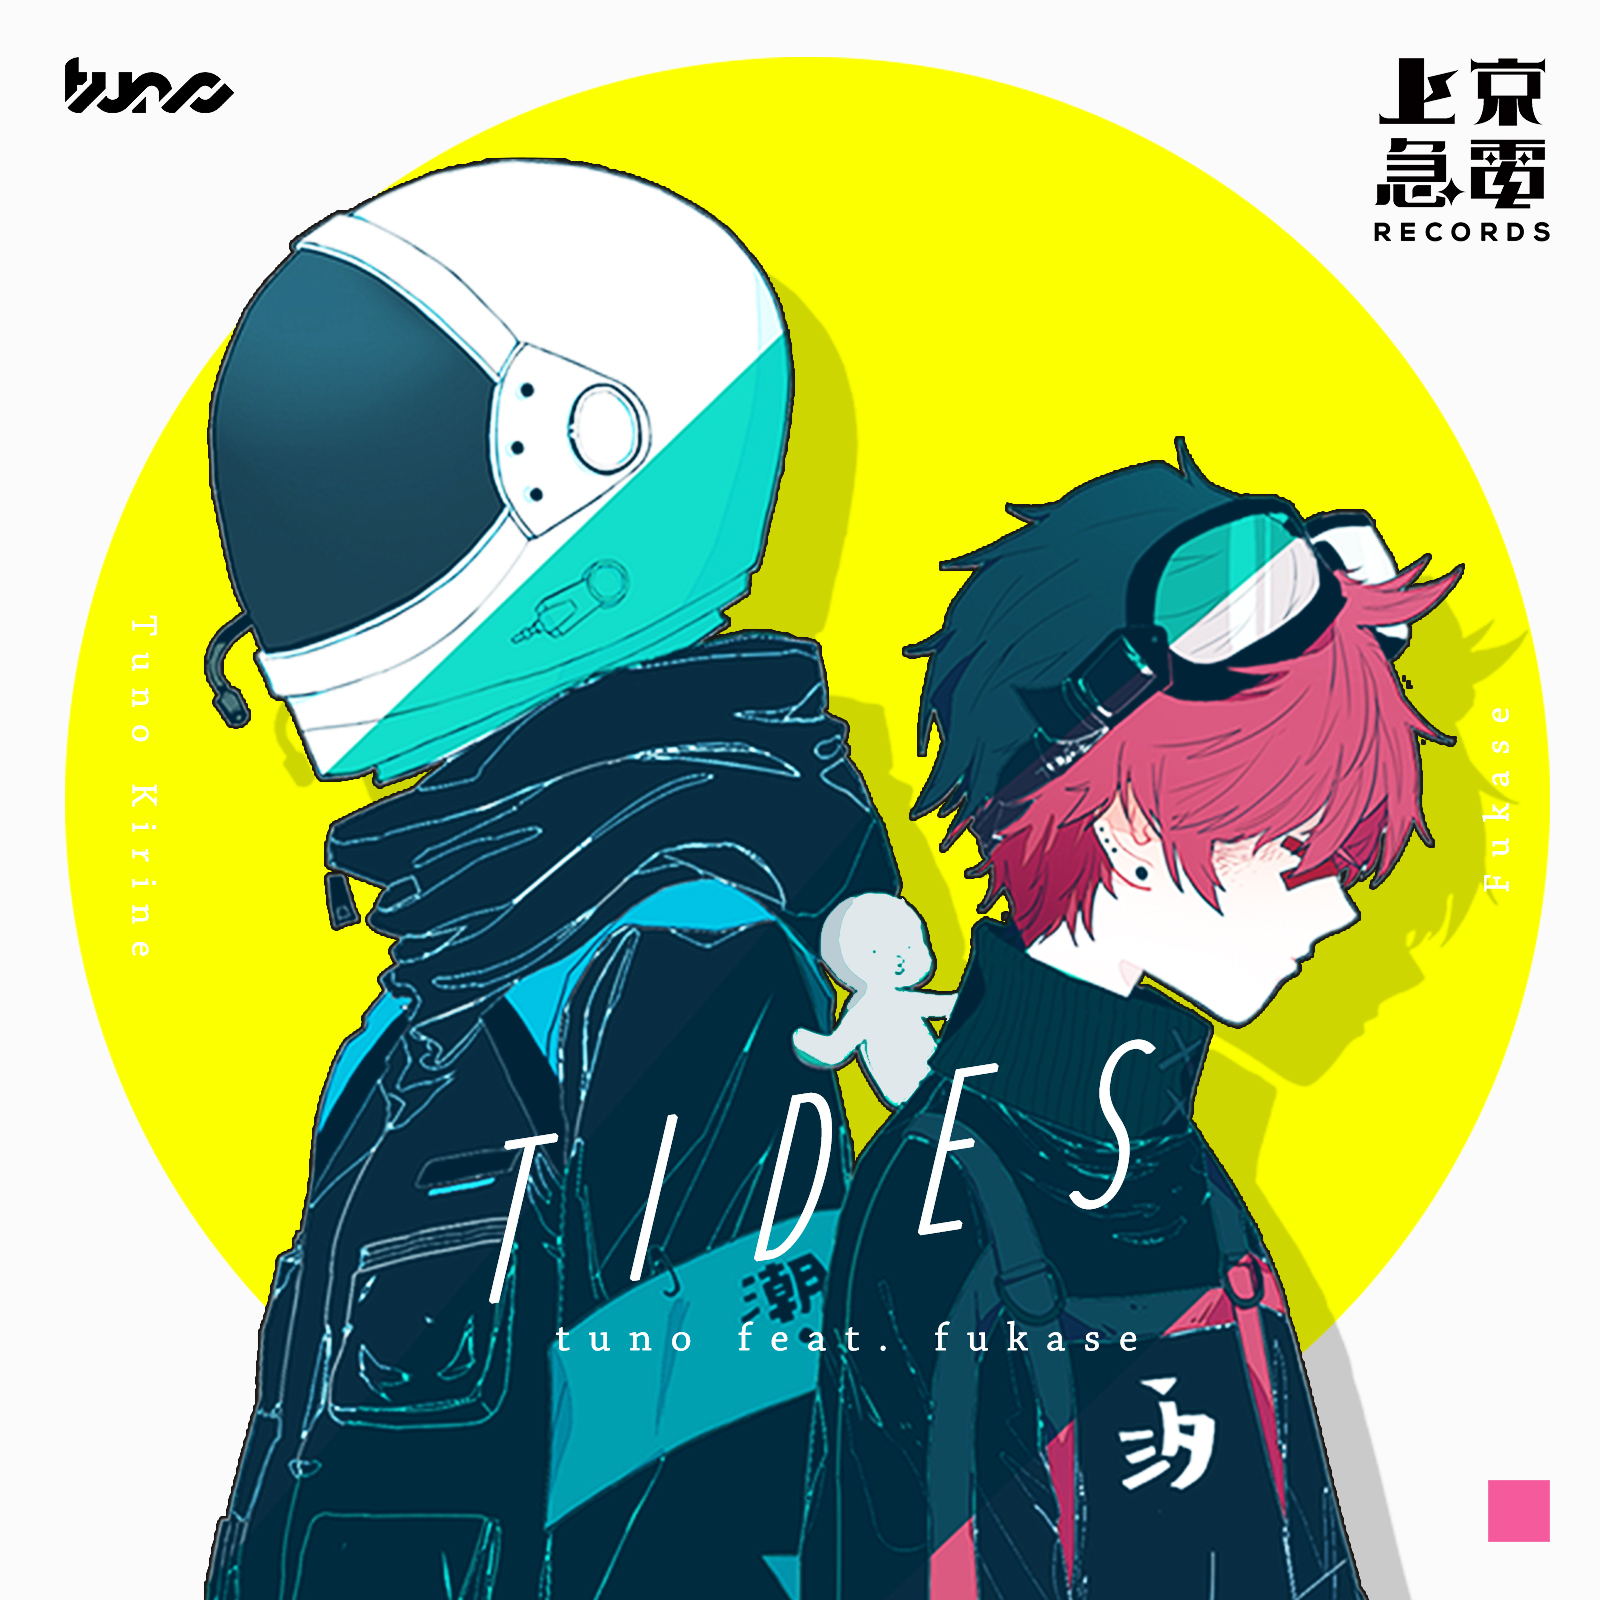 Tides - Tuno feat. Fukase